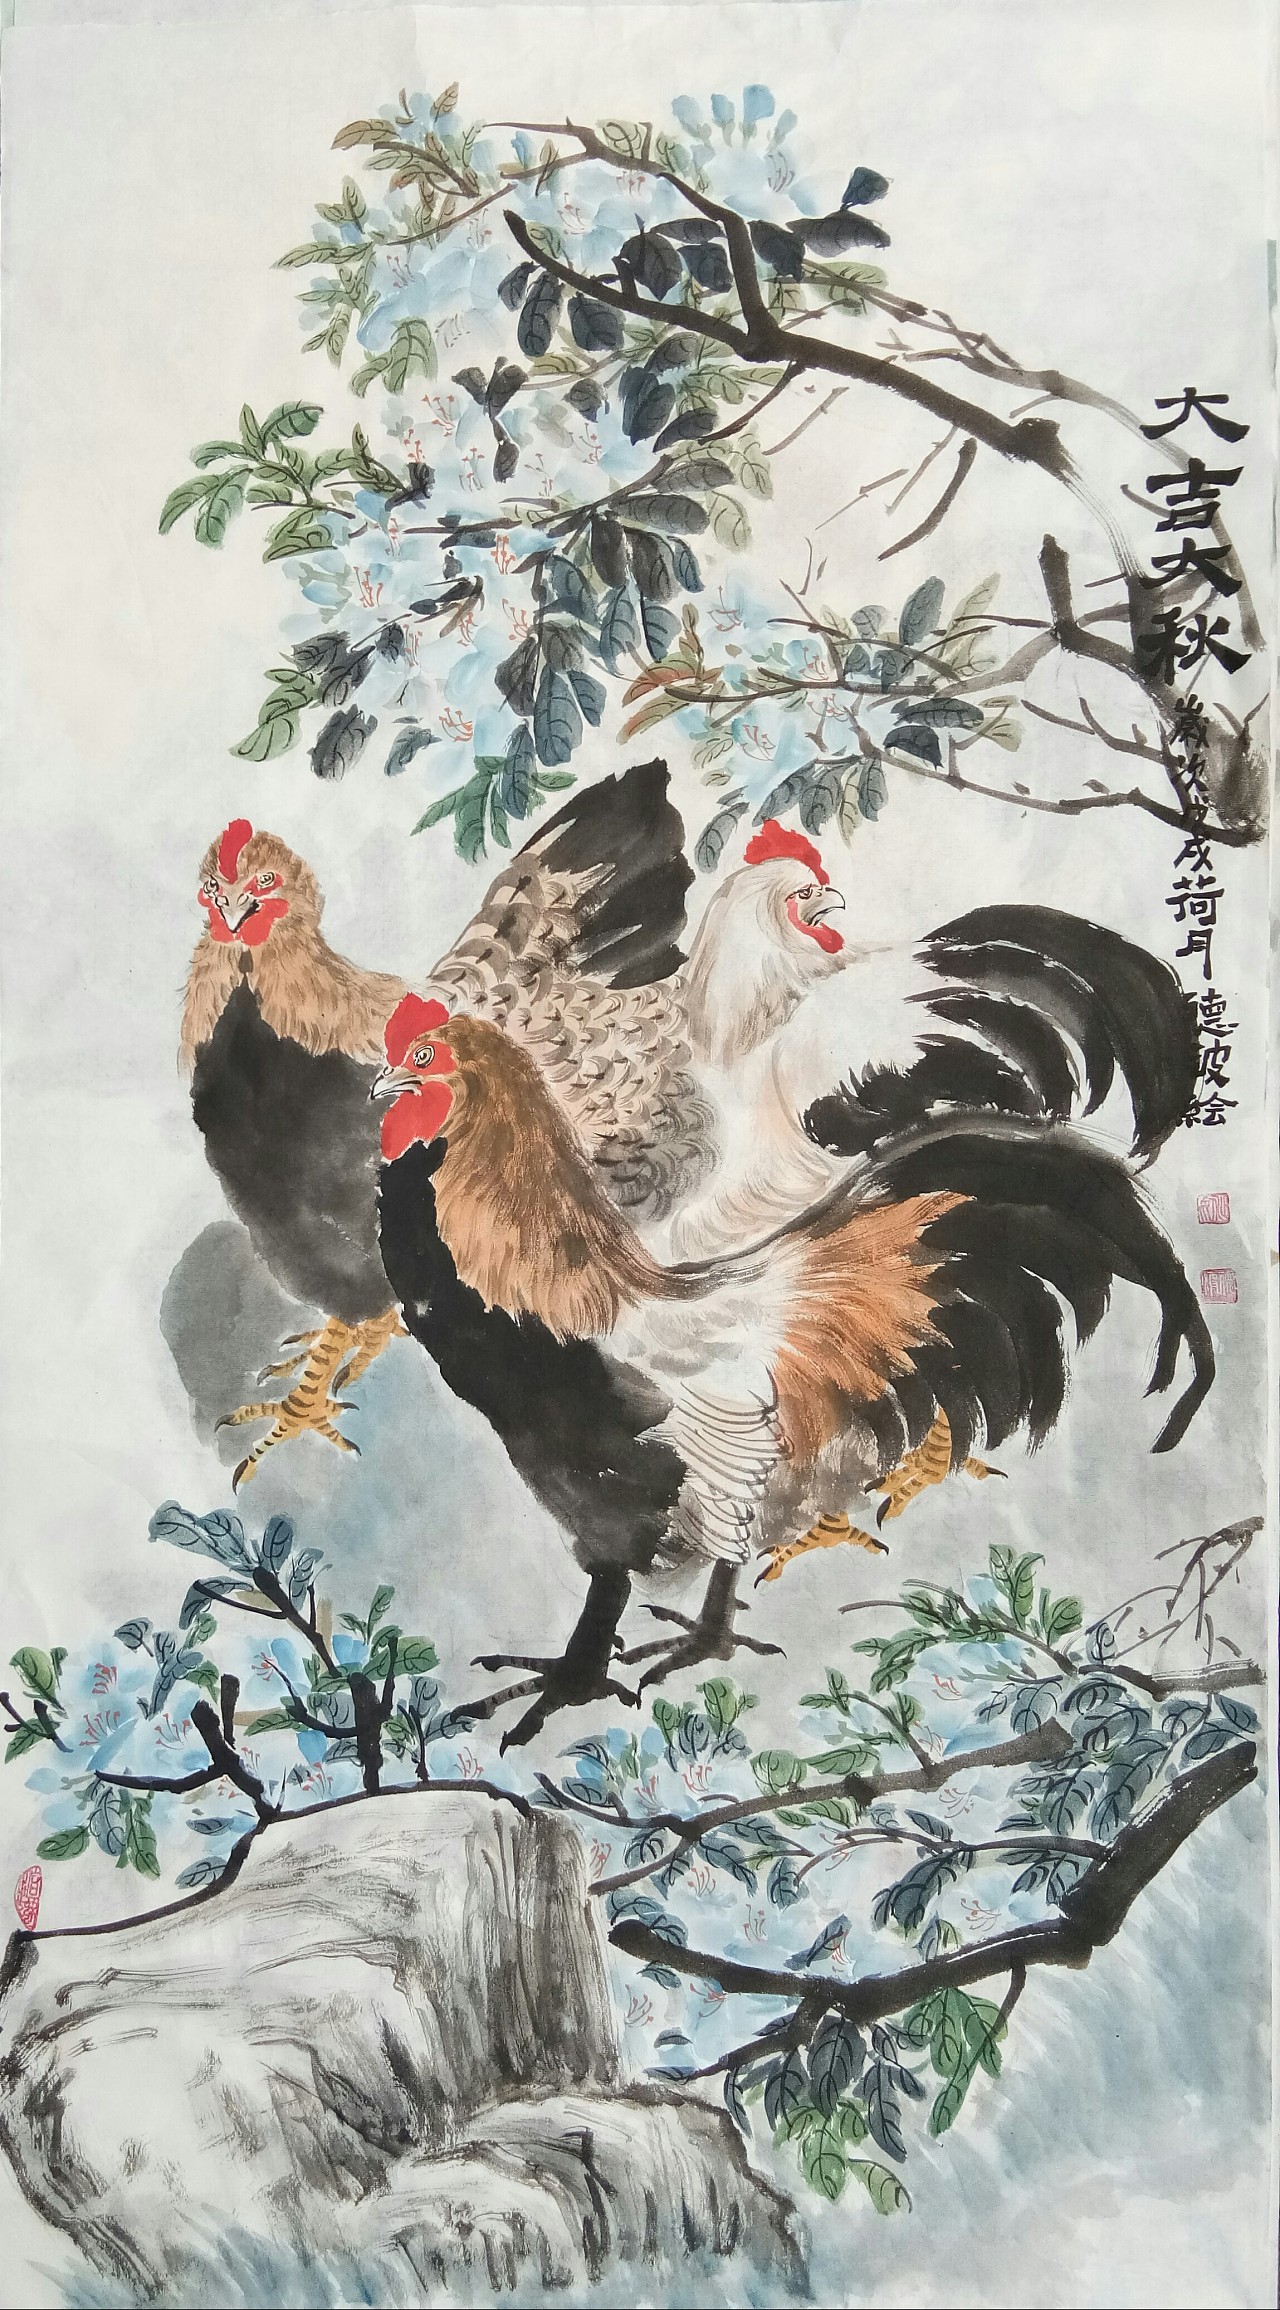 作品描述:中国传统文化以鸡为创作题材,寓意:"大吉大利